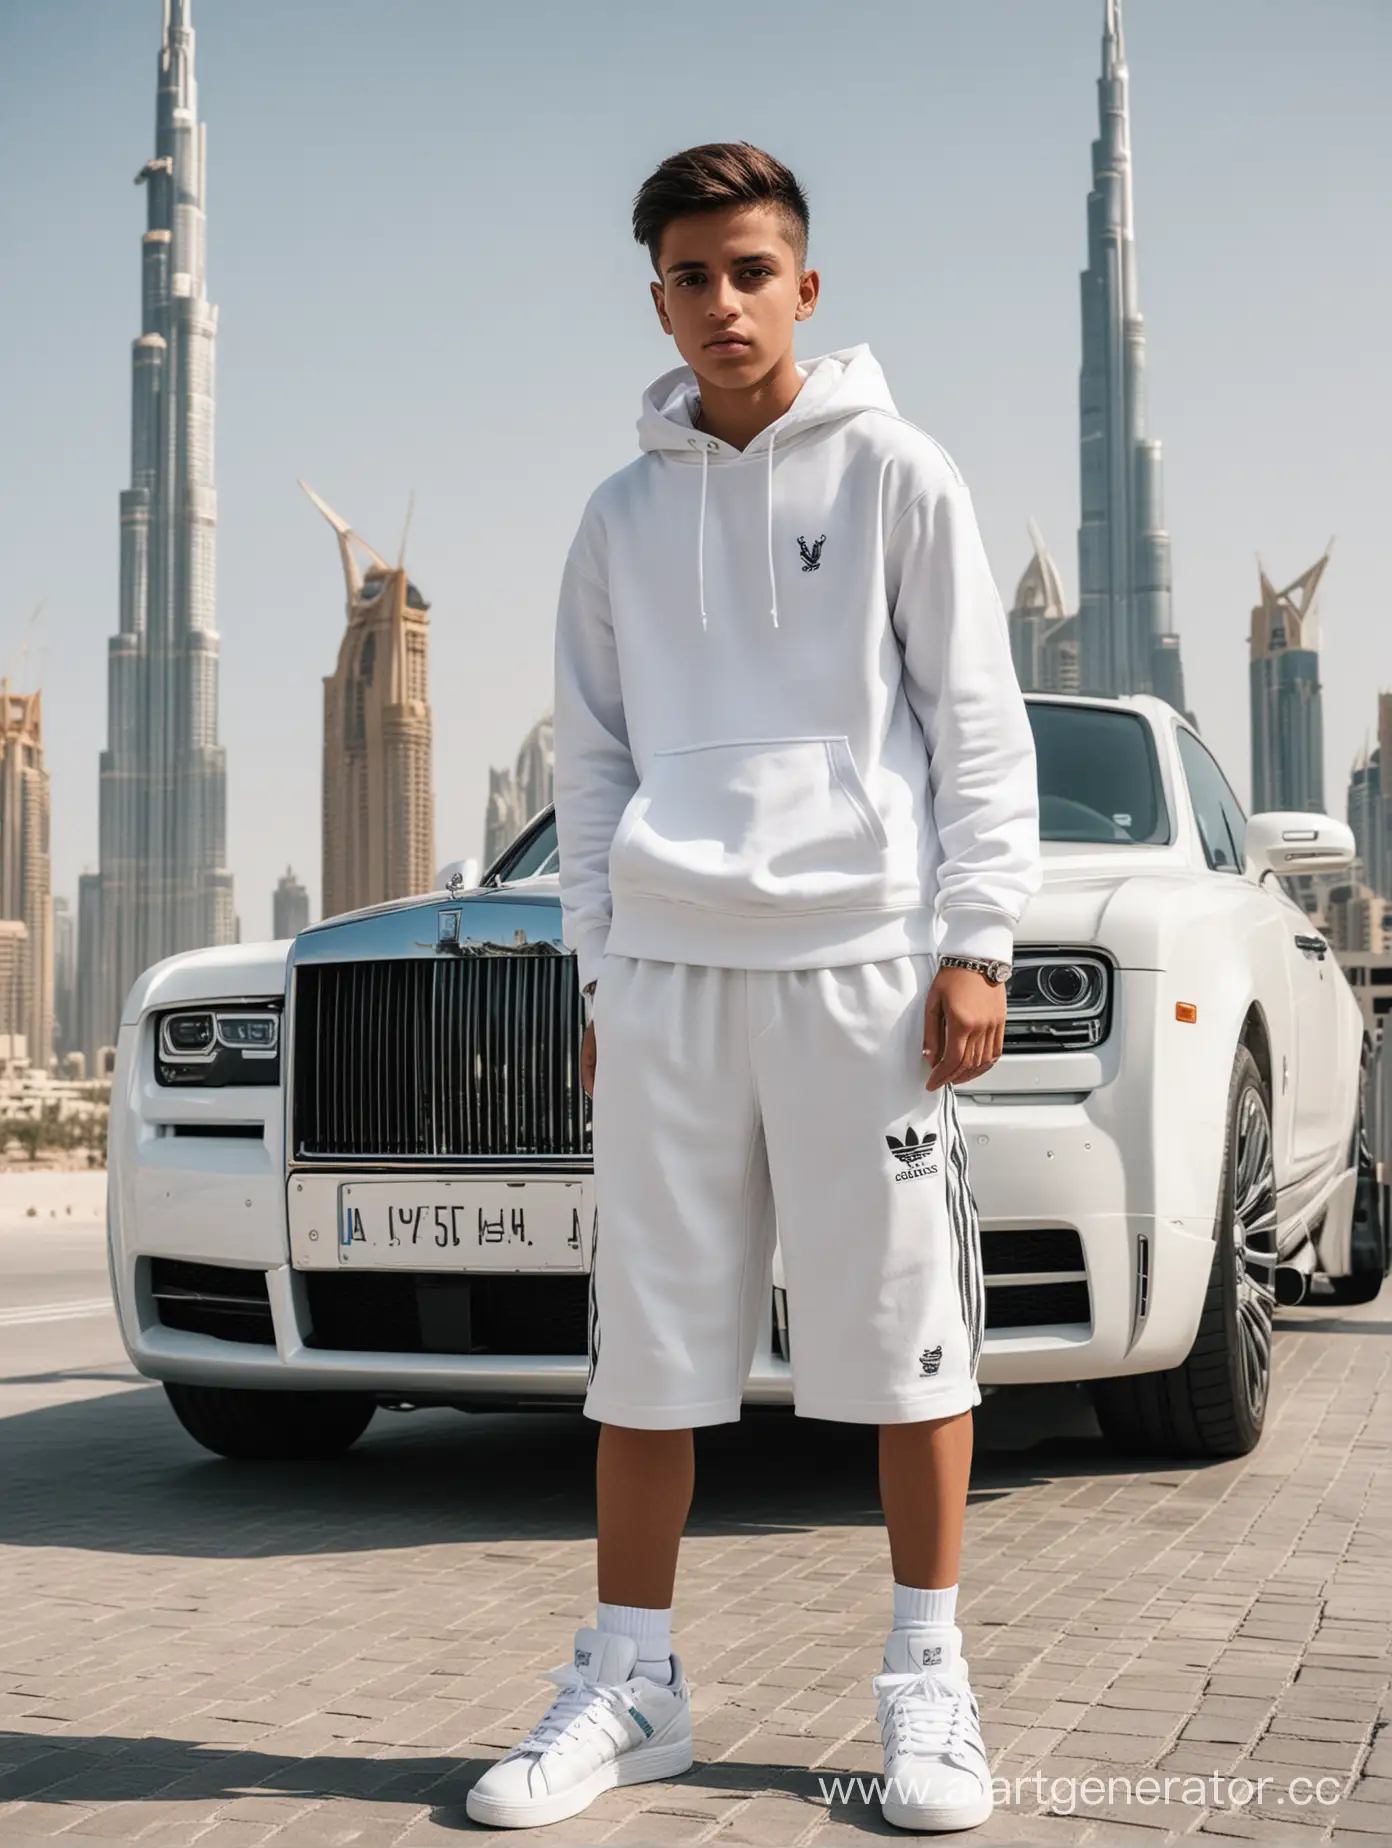 Мальчик 15 лет стоит на фоне Дубая в белых кроссовках, белой кофте и шортах адидас, в капюшоне, рядом с ним стоит РОЛС рой 